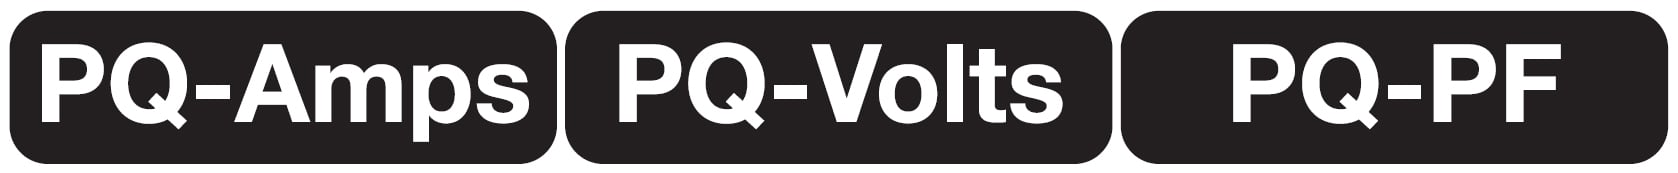 Logotipos de visualización de calidad eléctrica